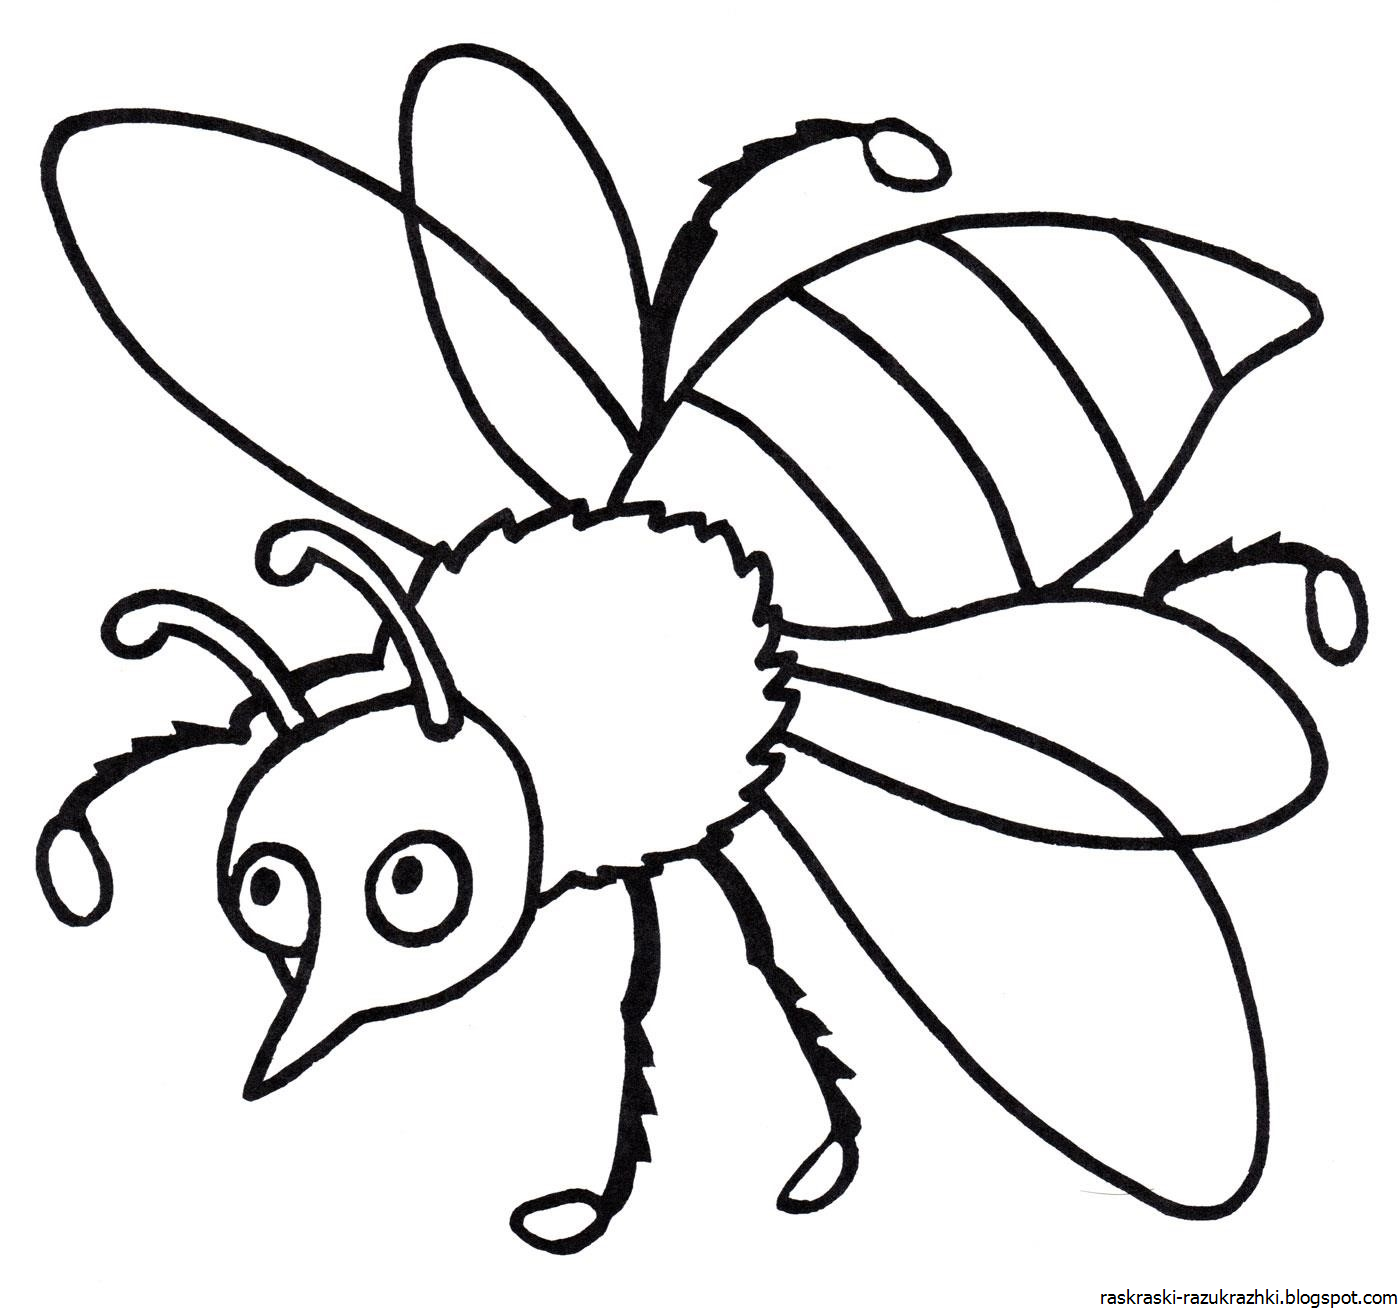 Раскраски насекомые для детей 5 6. Насекомые раскраска для детей. Раскраски насекомые для детей 5-6 лет. Пчела раскраска. Раскраска насекомые для малышей.